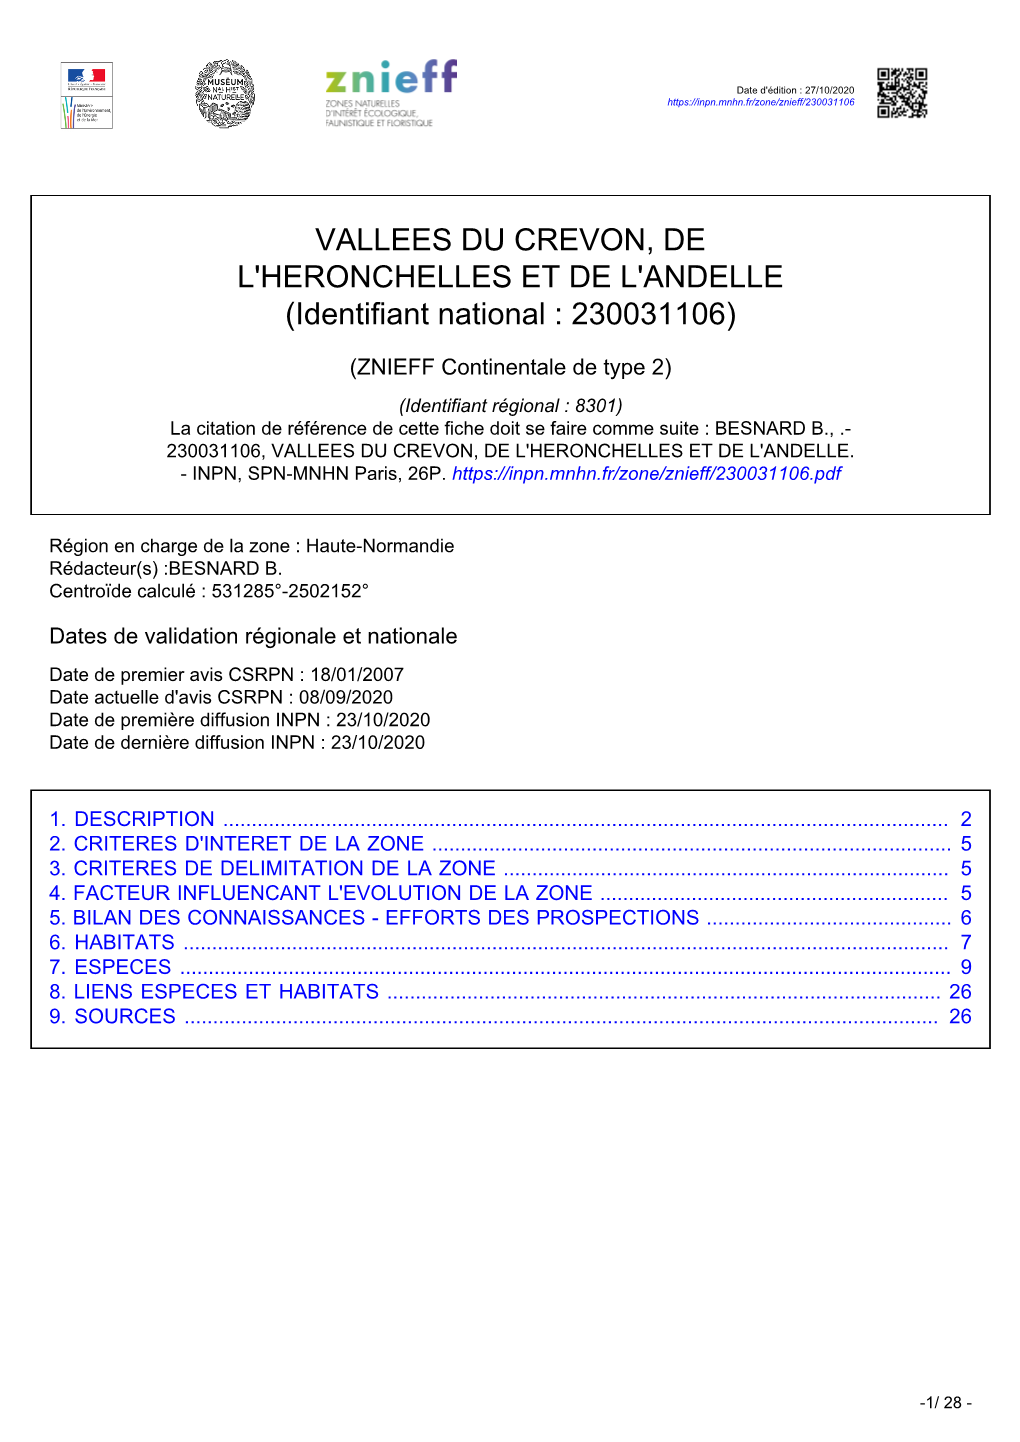 VALLEES DU CREVON, DE L'heronchelles ET DE L'andelle (Identifiant National : 230031106)